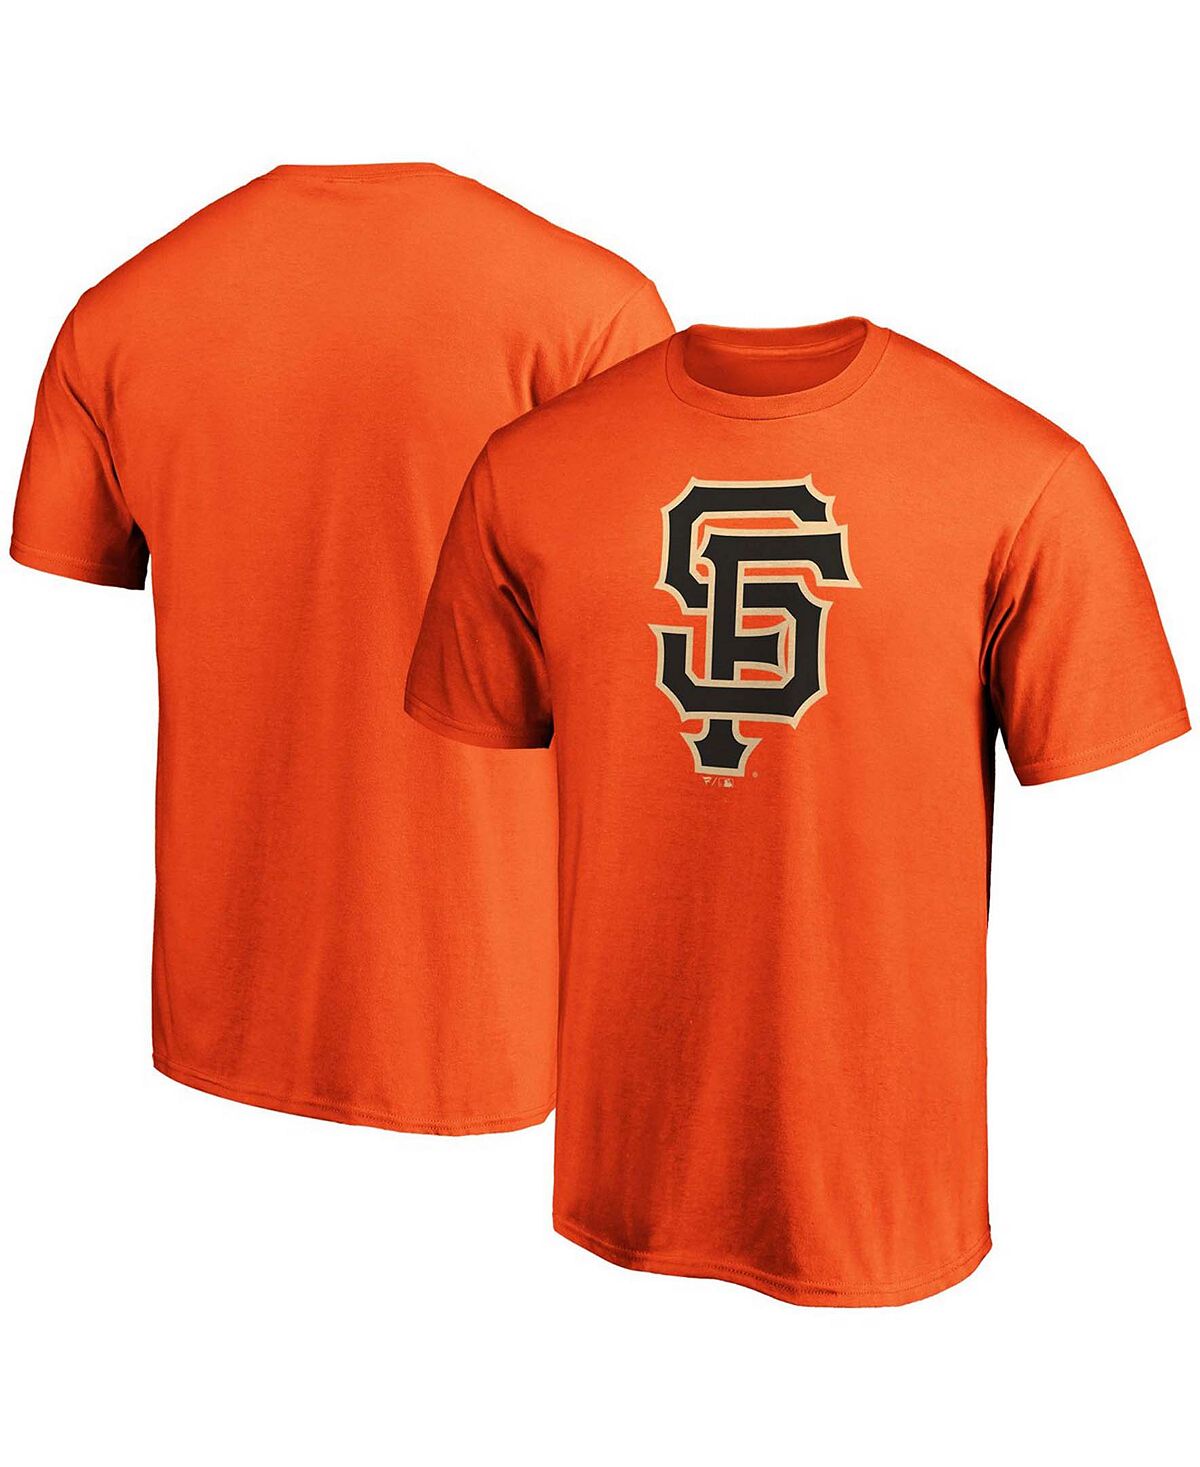 Мужская футболка orange san francisco giants с официальным логотипом Fanatics мужские камуфляжные шорты san francisco giants team pro standard